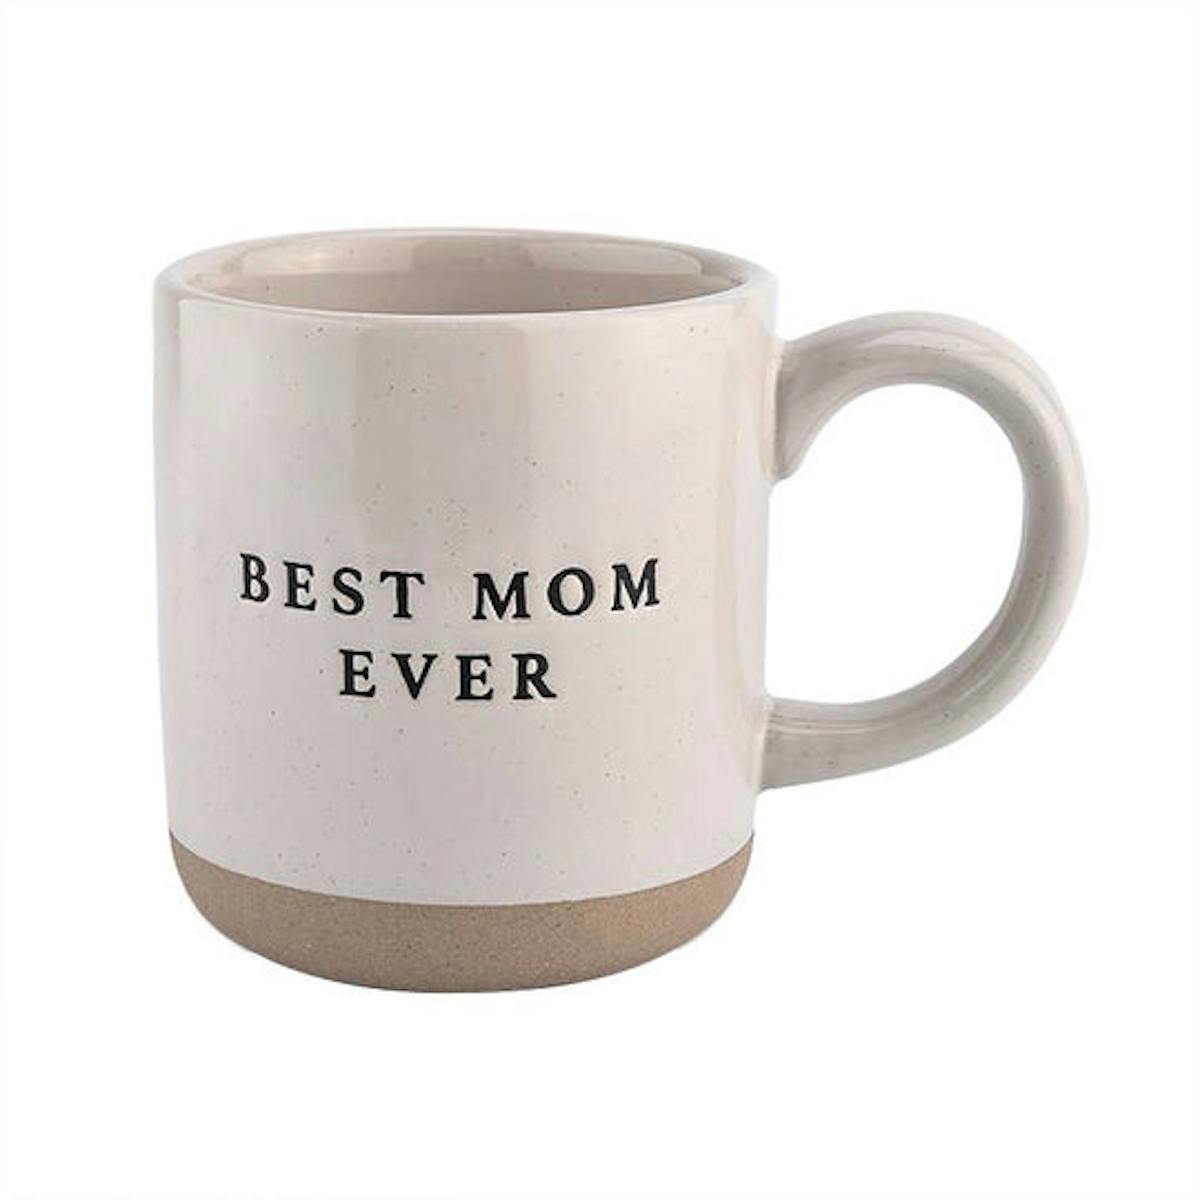 a coffee mug